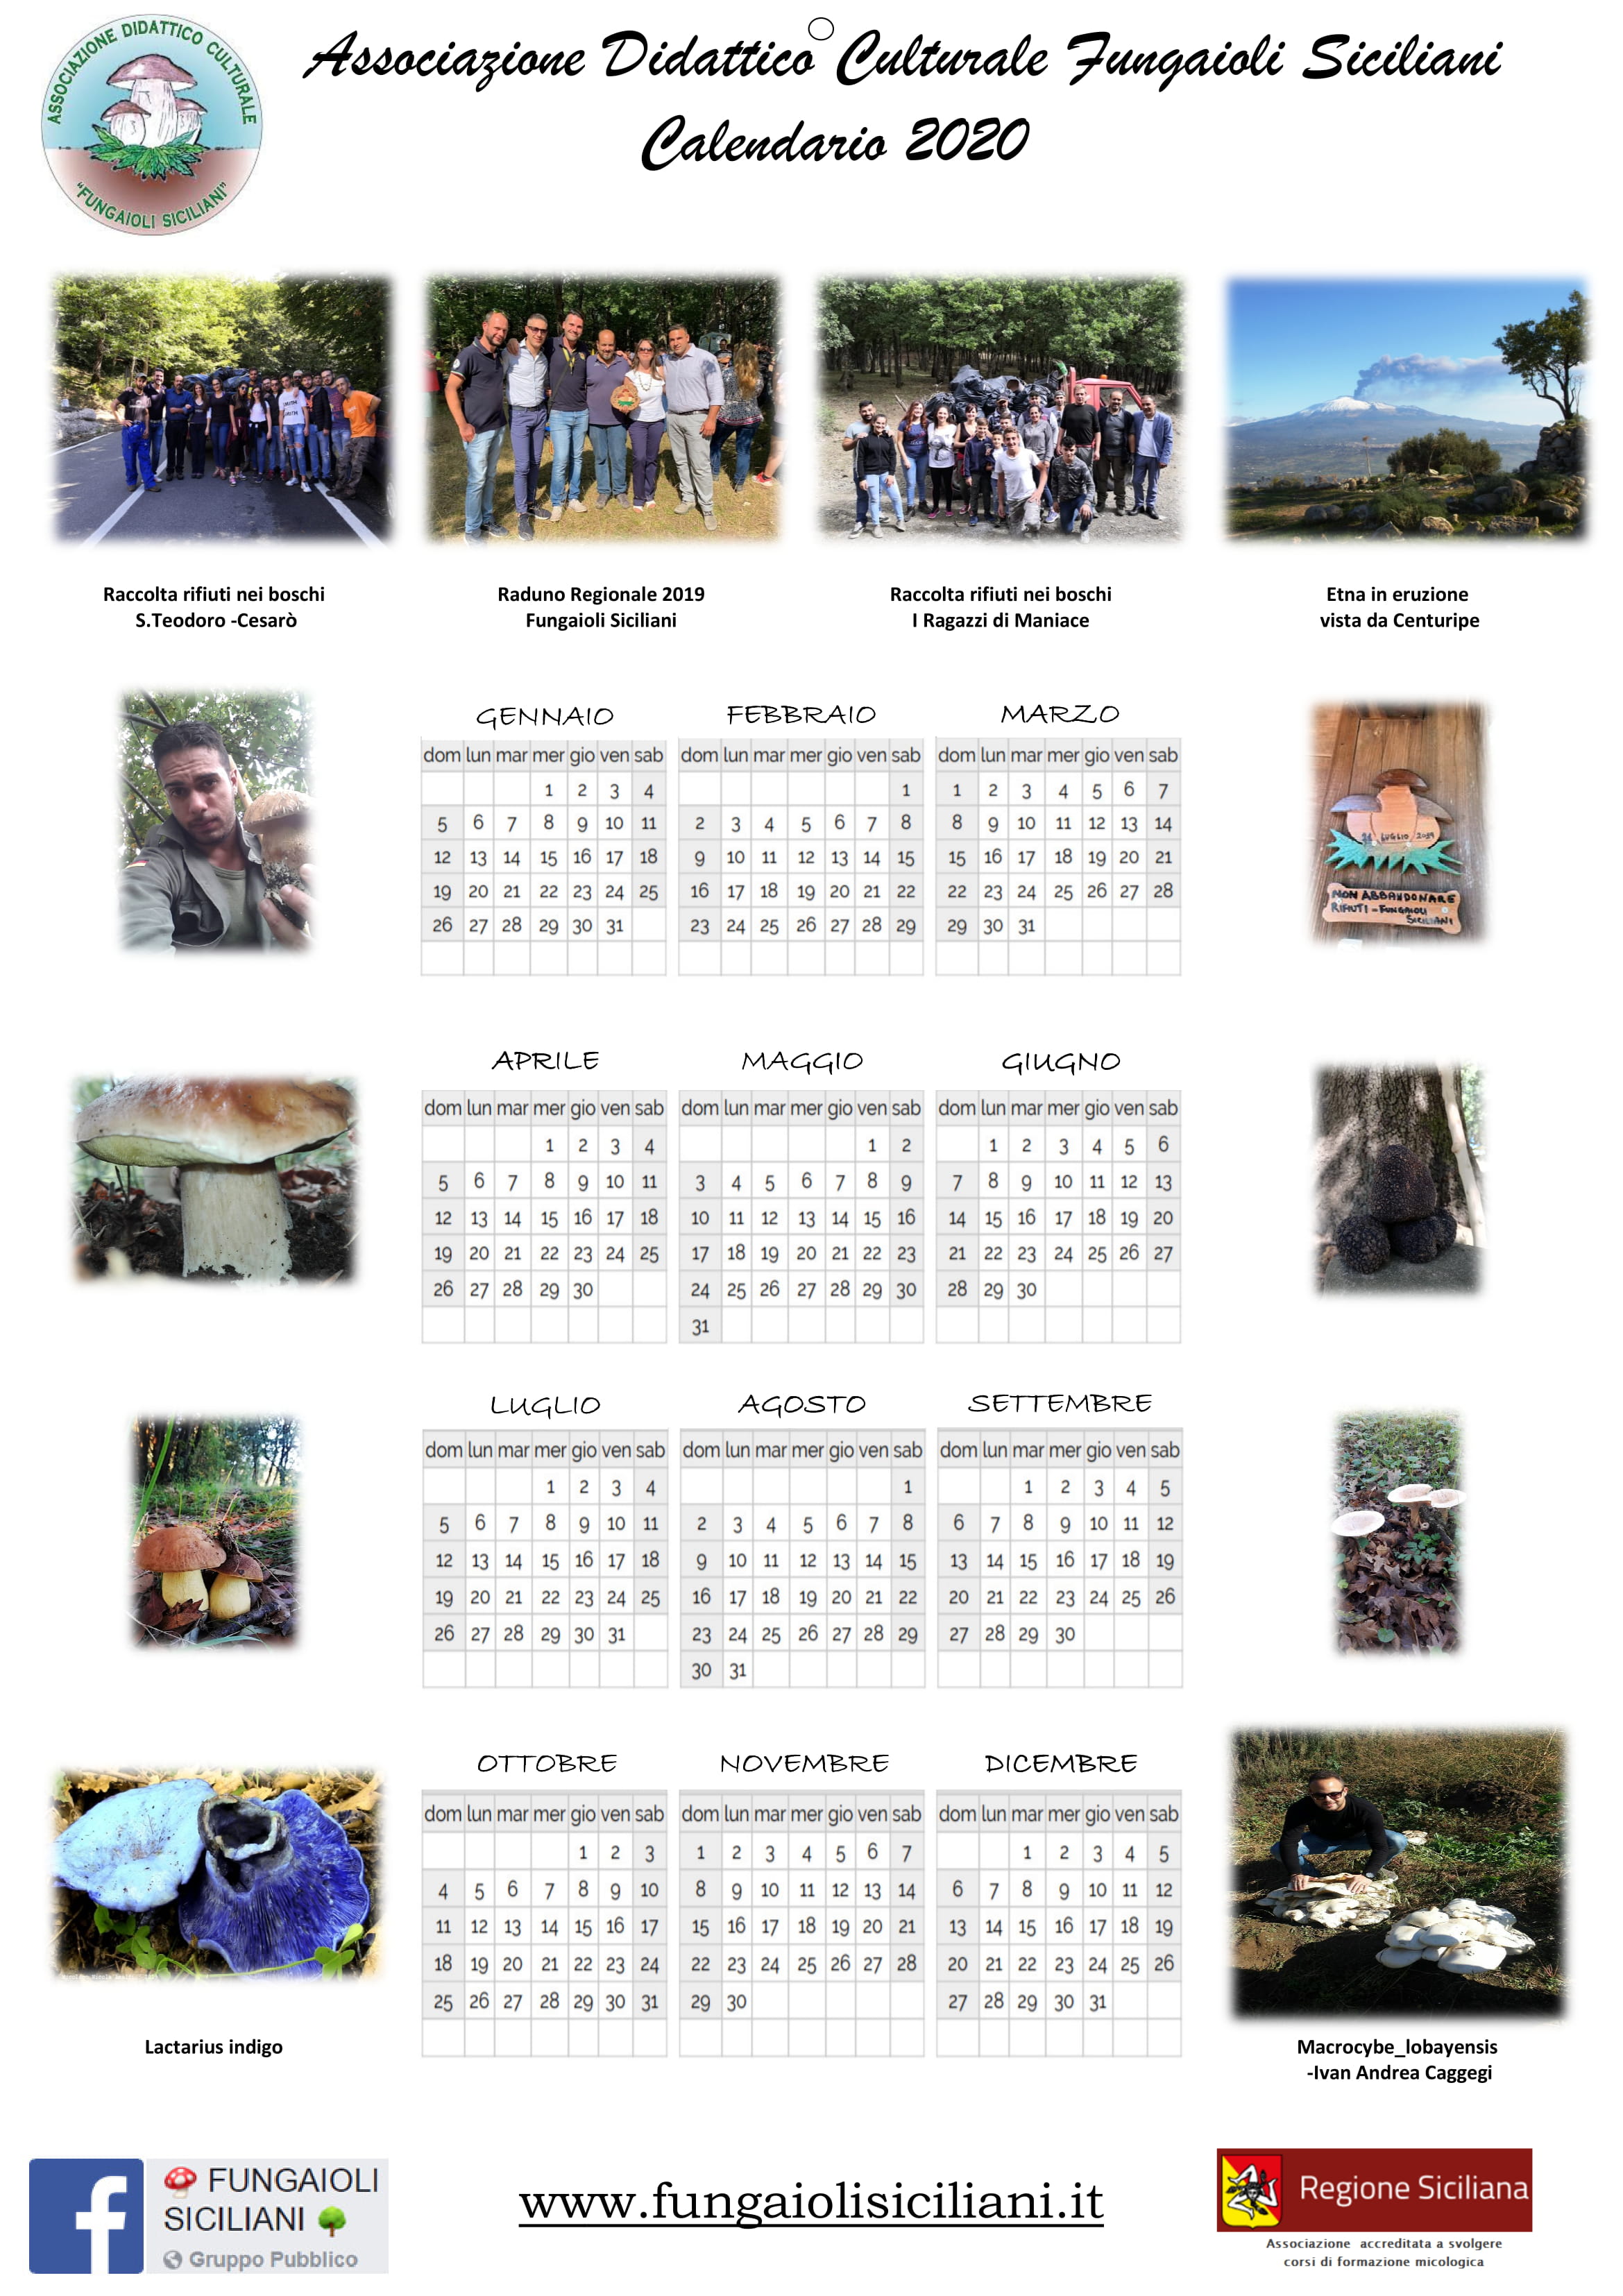 Calendario_2020_-_Simone_Grasso-1.jpg - 835,12 kB